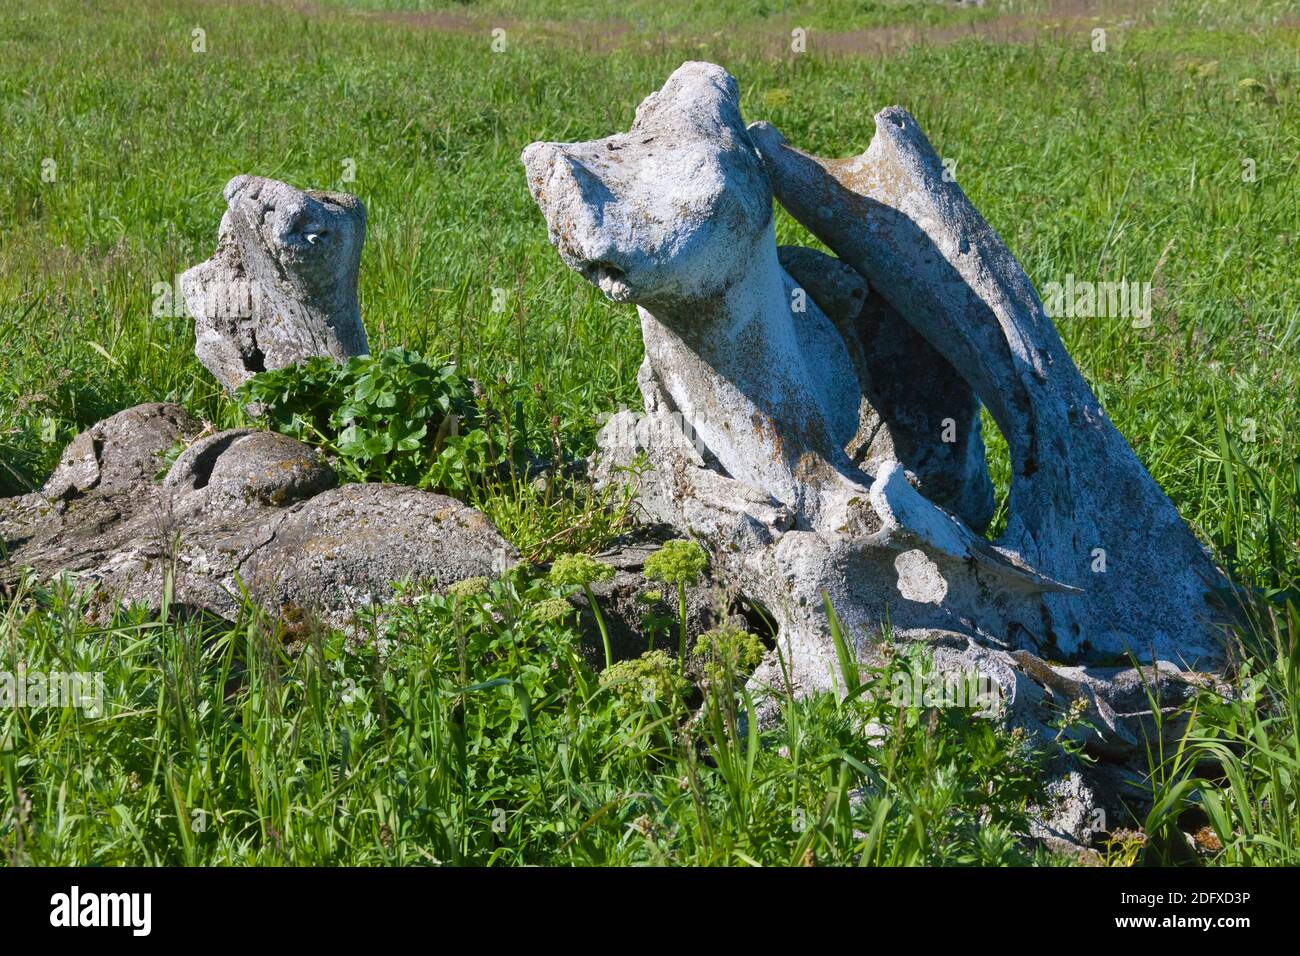 L'os de la mâchoire de baleine, l'Île Yttygran, Mer de Béring, Extrême-Orient russe Banque D'Images